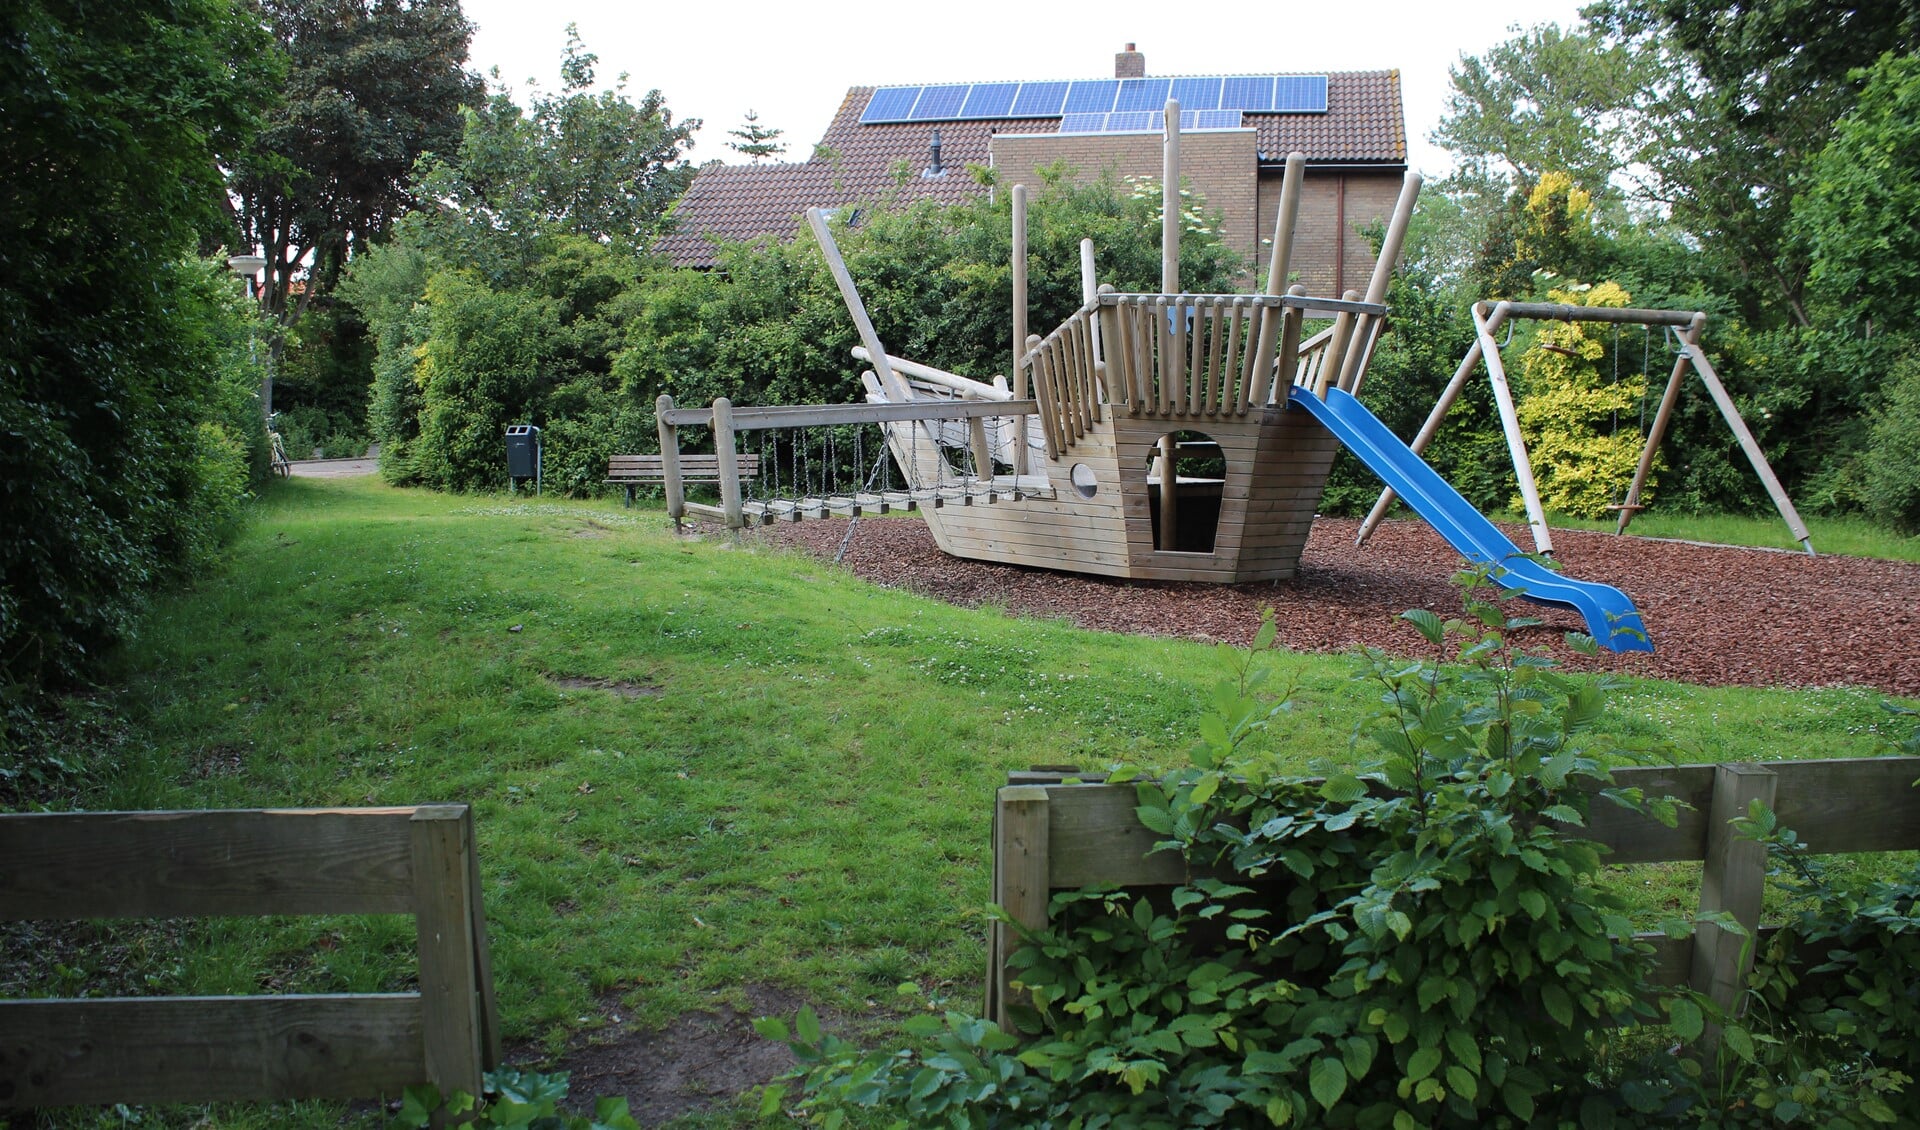 Het piratenschip aan de Zaan is erg populair onder kinderen. Foto: Martijn Mastenbroek